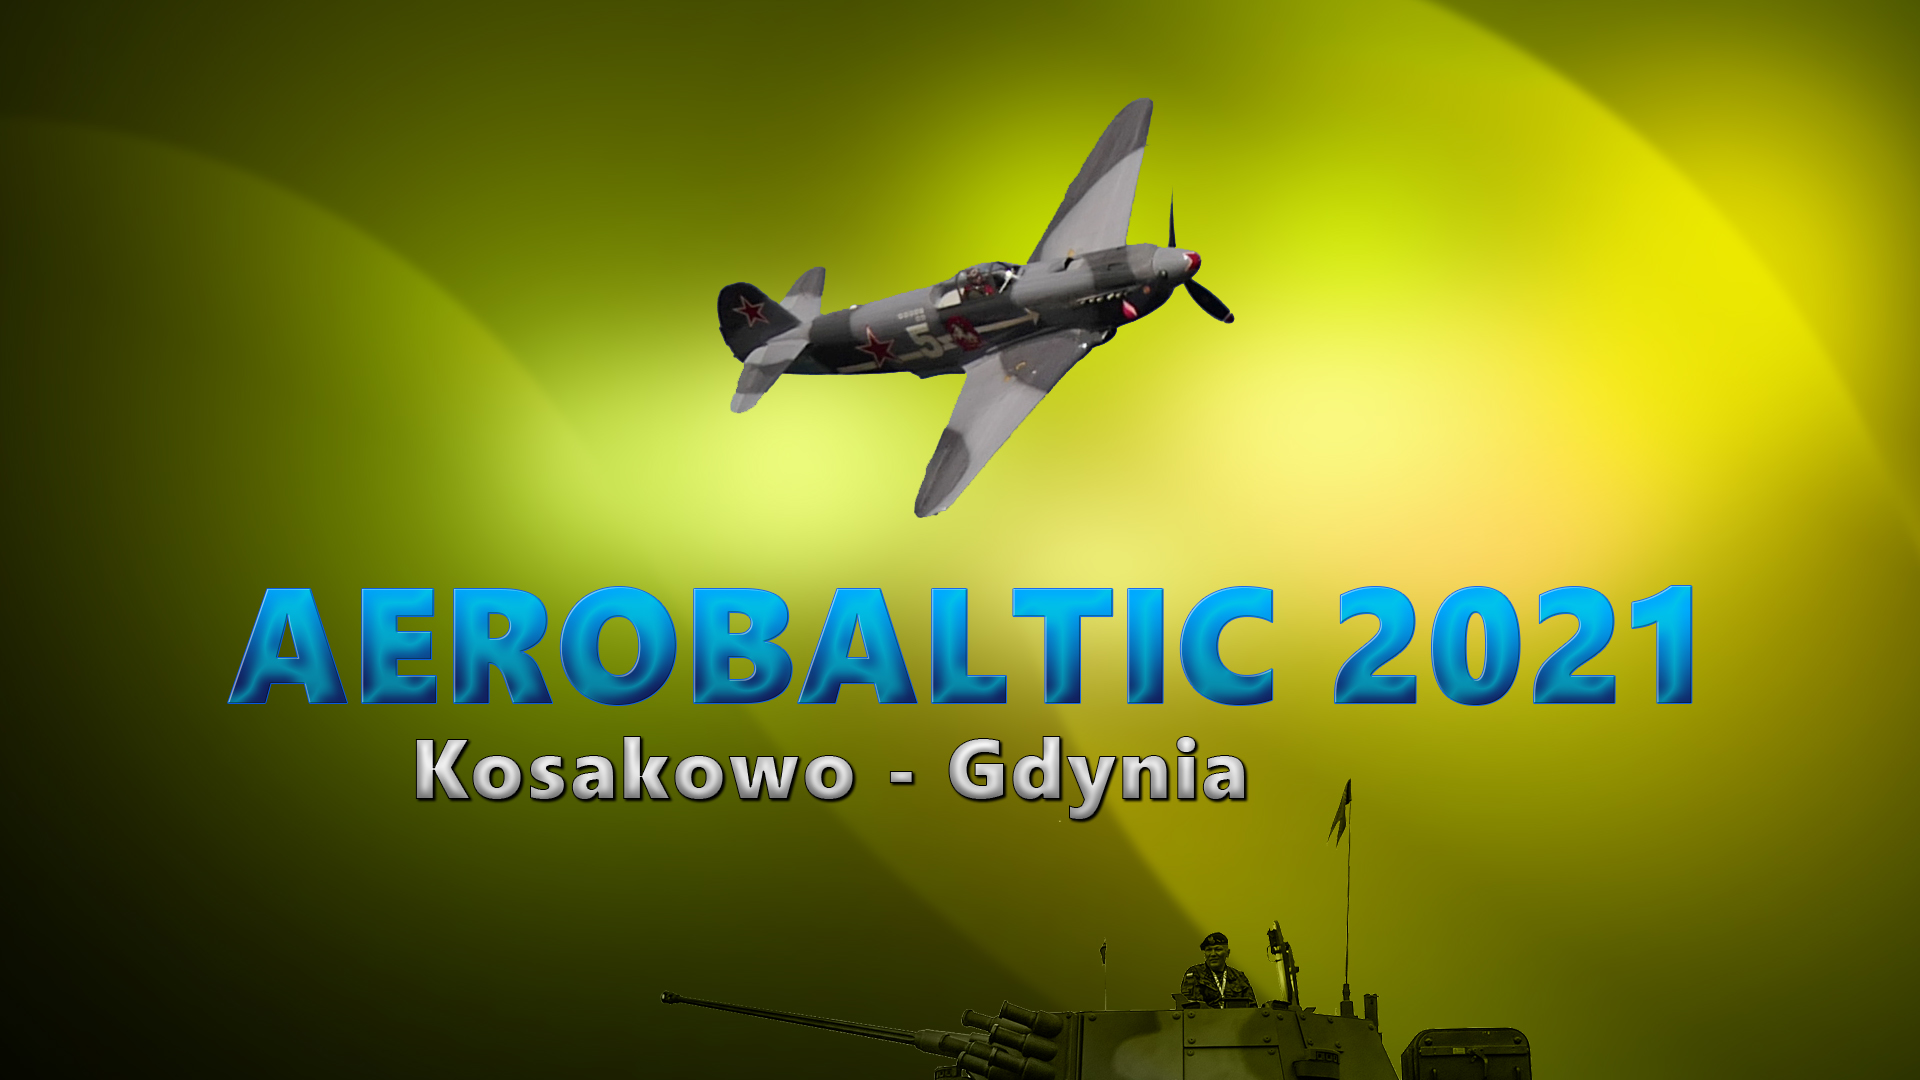 Aerobaltic 2021